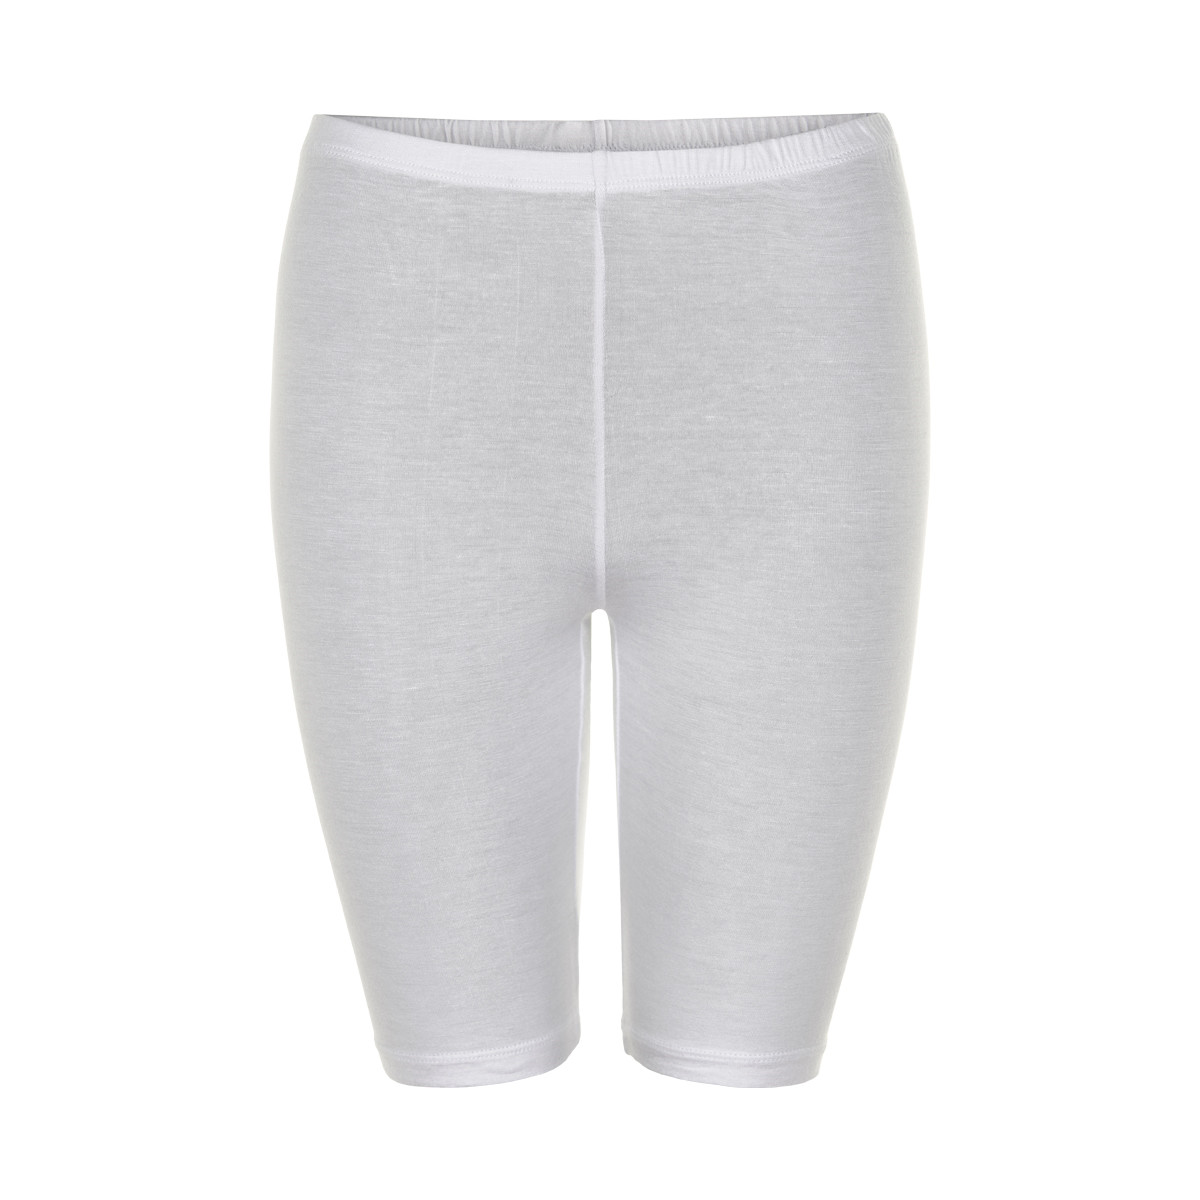 #2 - Decoy Jersey Shorts, Farve: Hvid, Størrelse: S, Dame